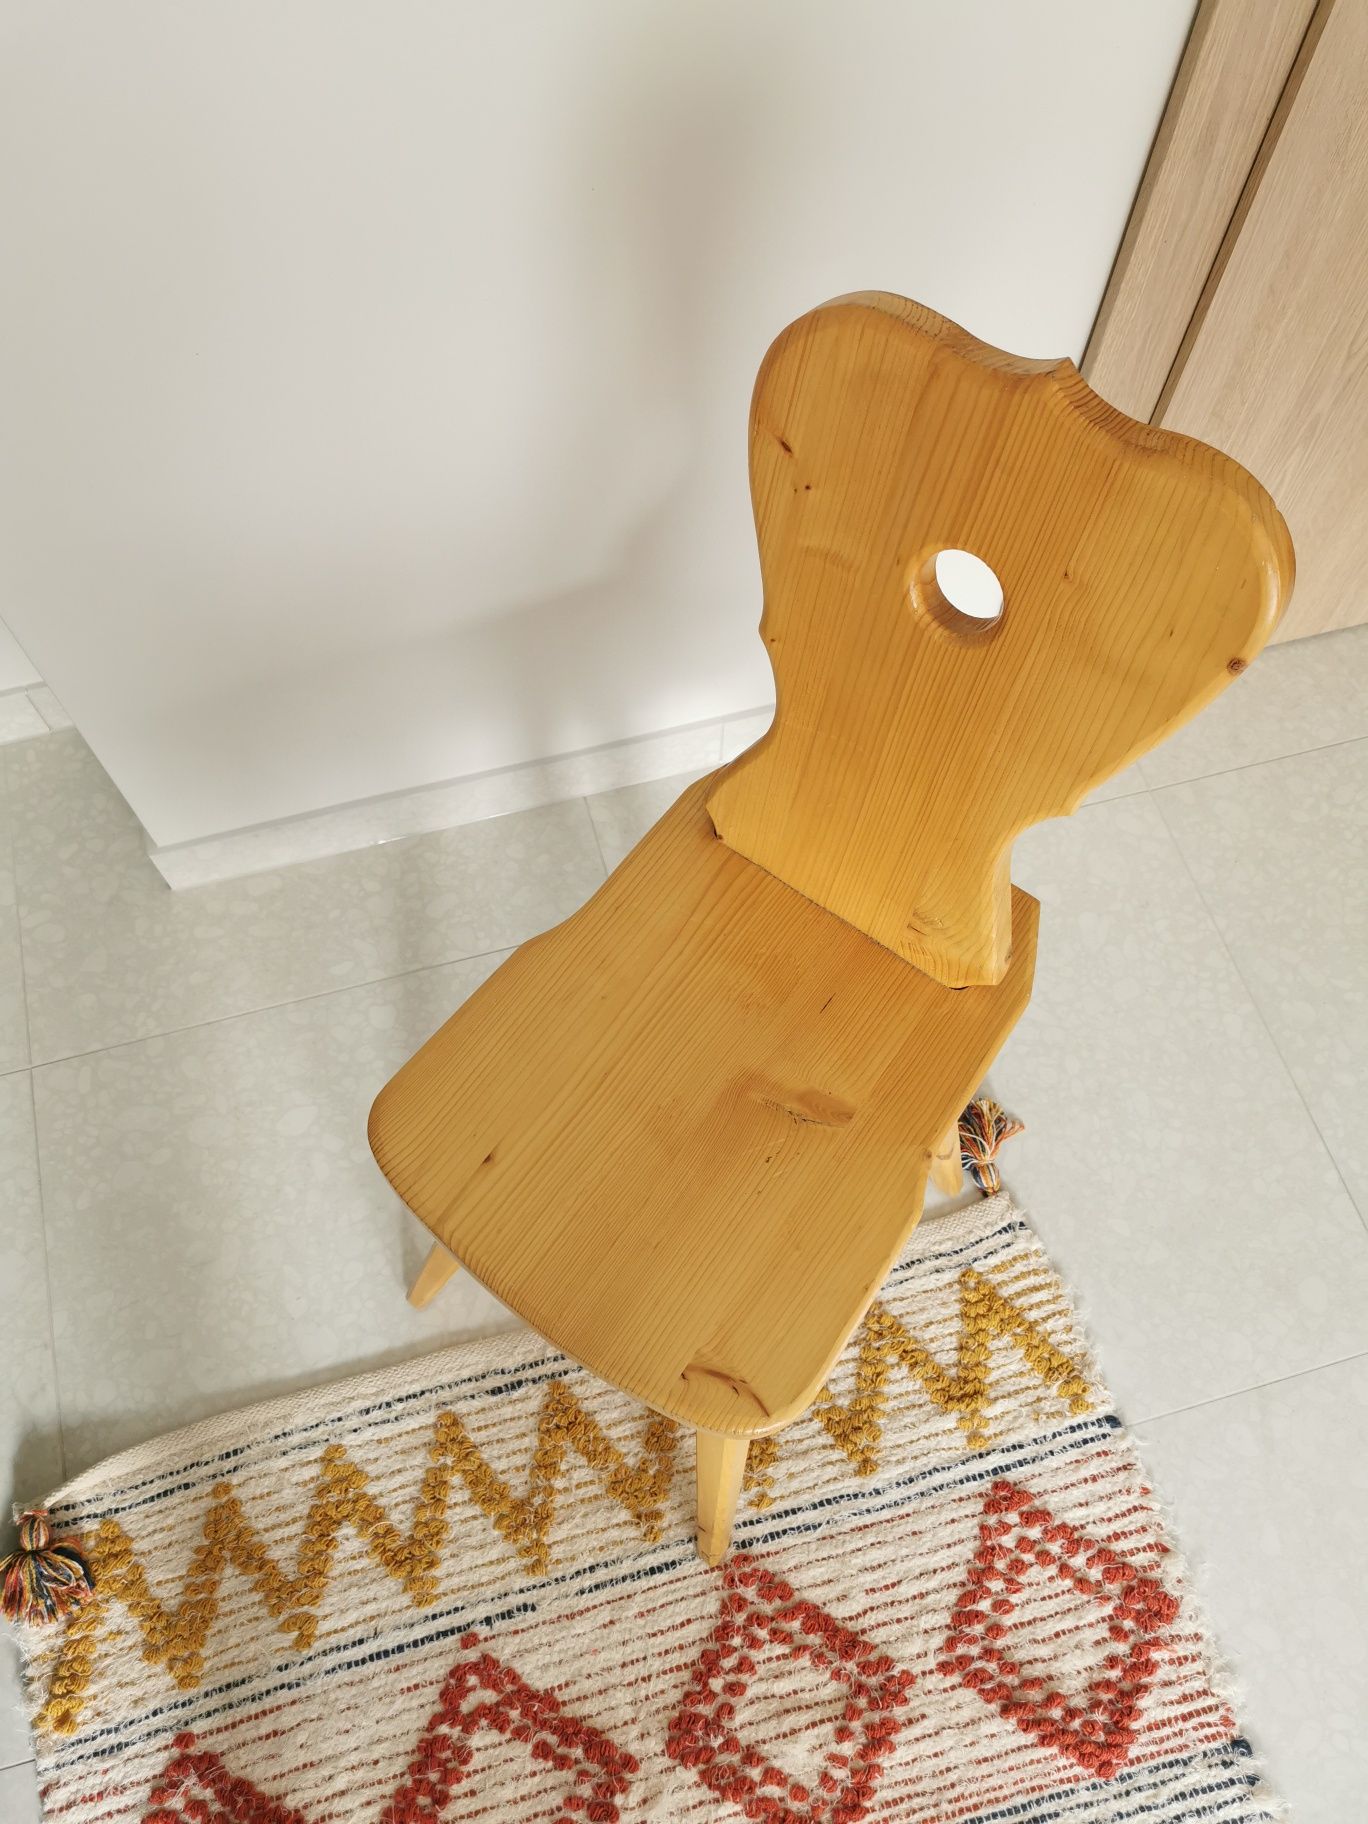 Krzesło lite drewno - zydel podhalański styl